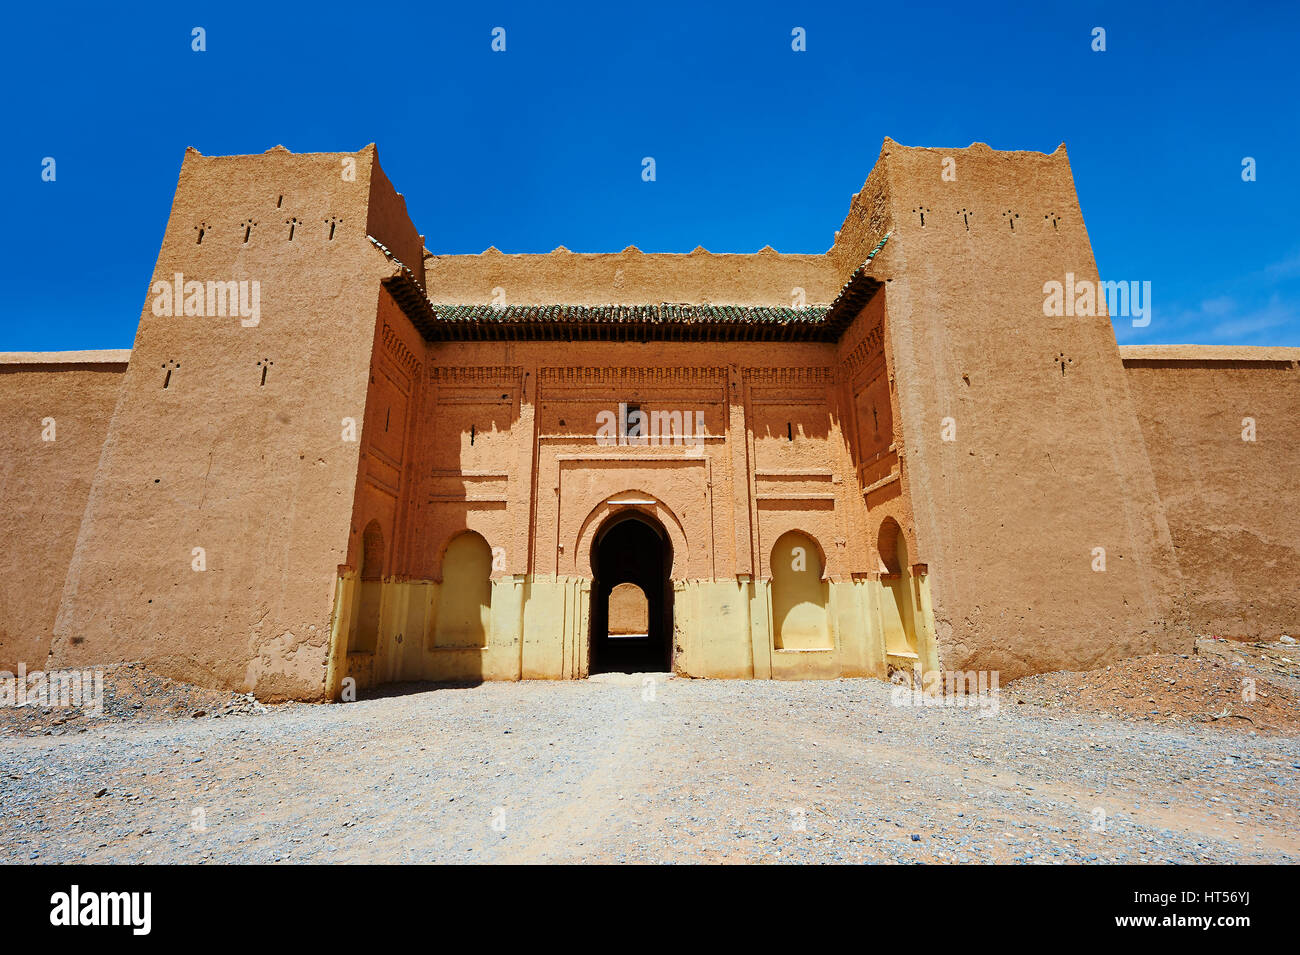 Entrée privée et fortifications de la FIDA Ksar Alaouite construit par Moulay Ismaïl le deuxième souverain de la dynastie alaouite marocain ( qui régna de 1672-1727 ). Banque D'Images